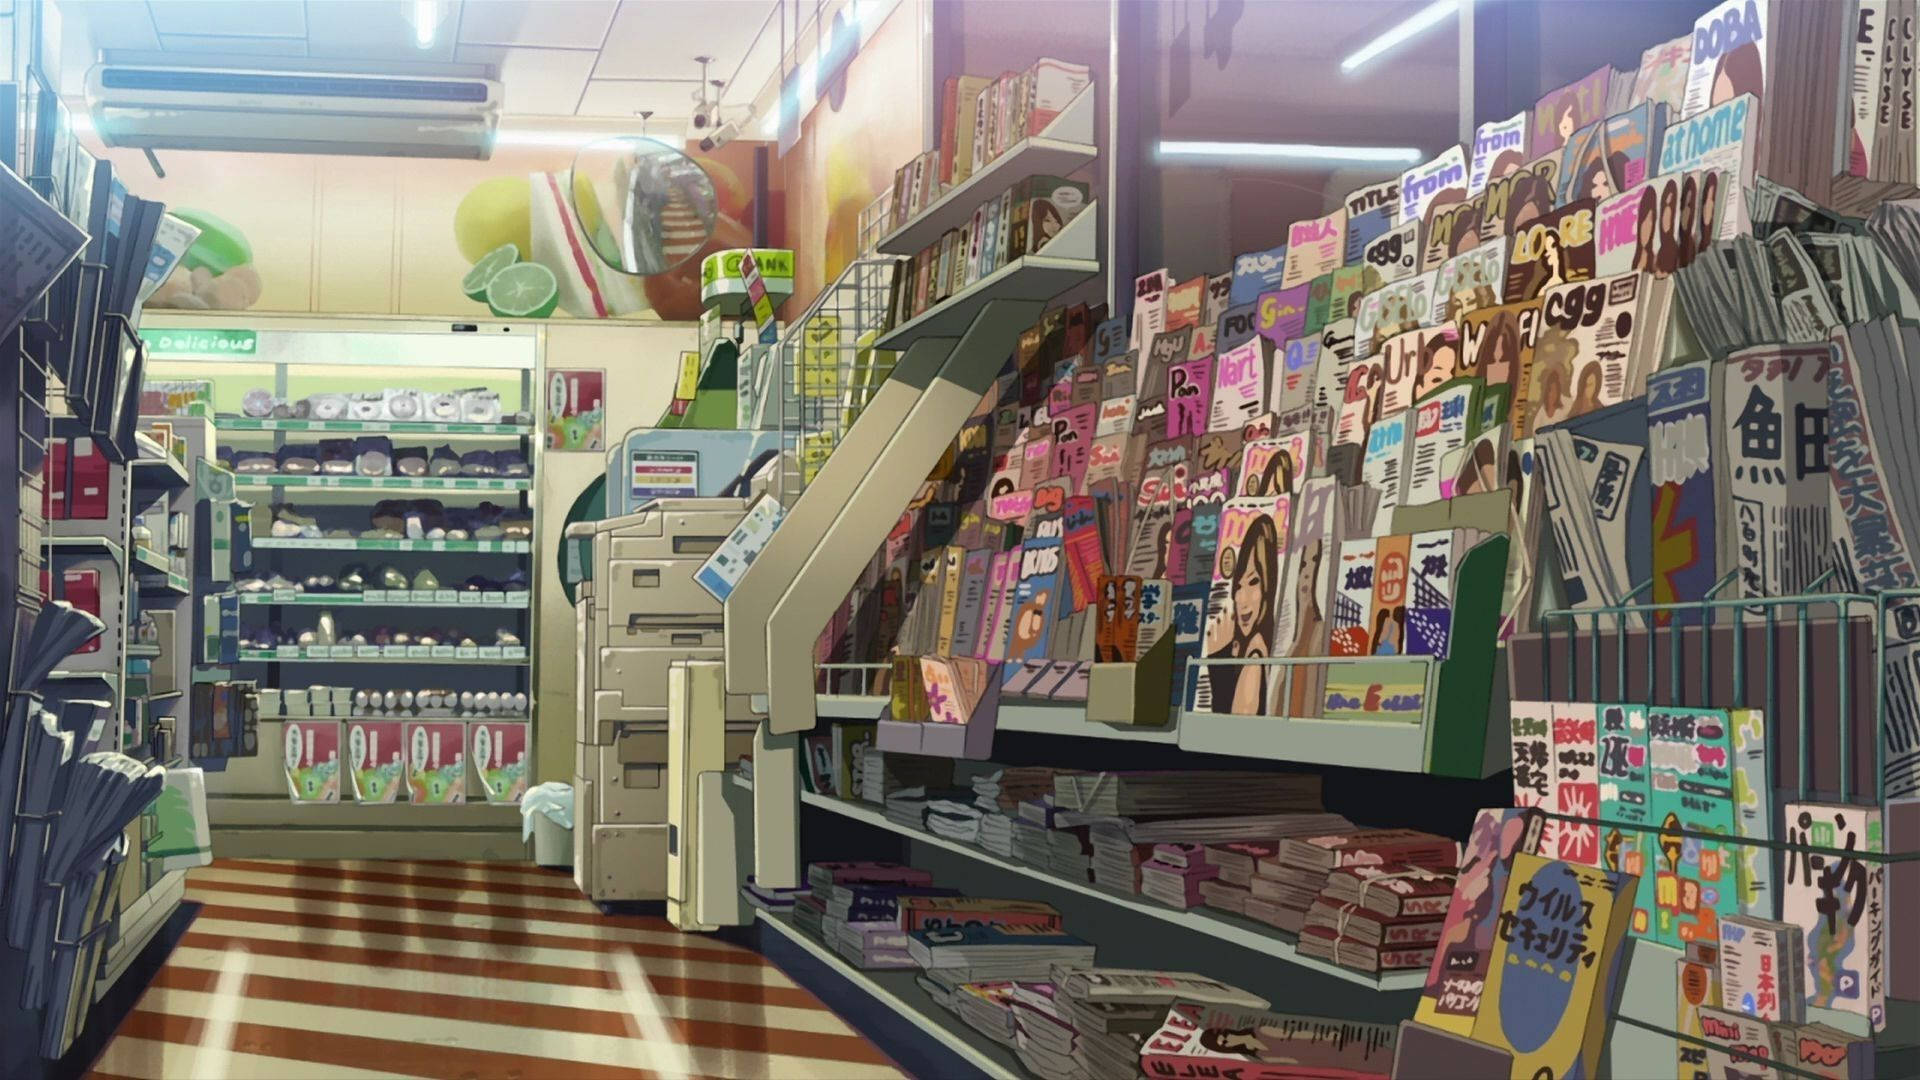 Bộ sưu tập hình ảnh Grocery store anime sẽ đưa bạn đến với thế giới siêu thị đầy đủ hàng hóa chất lượng và giá cả hợp lý. Những hình ảnh đầy tươi sáng và đáng yêu này sẽ giúp bạn khám phá thêm nhiều điều thú vị về cuộc sống hàng ngày đầy bận rộn. Hãy cùng trải nghiệm bộ sưu tập Grocery store anime và tìm cho mình những bức hình ưng ý nhất nhé!